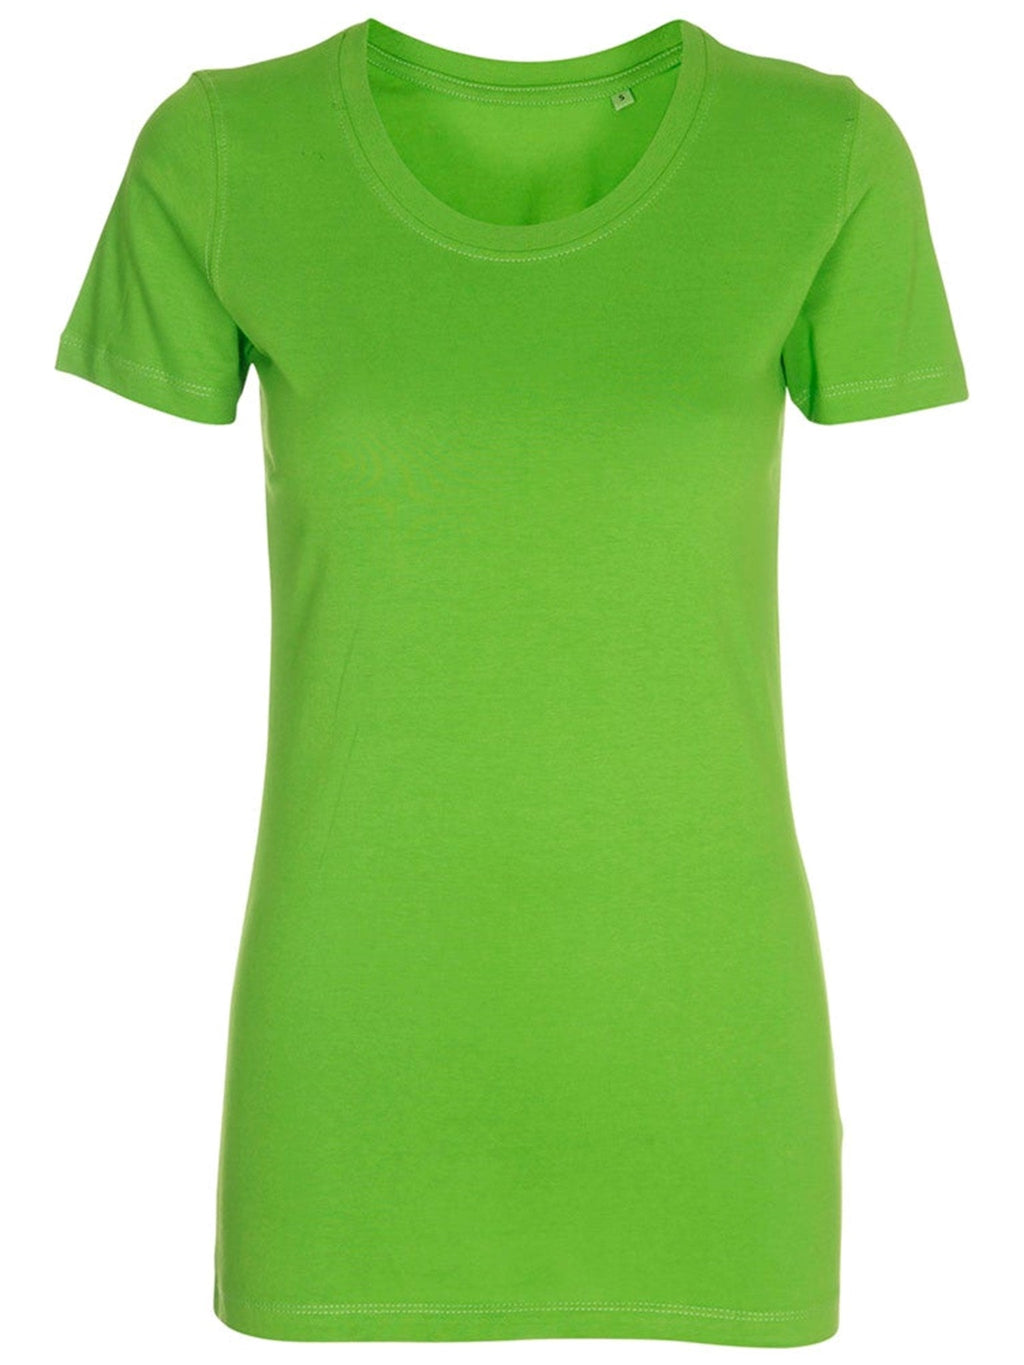 Τοποθετημένο μπλουζάκι - πράσινο ασβέστη